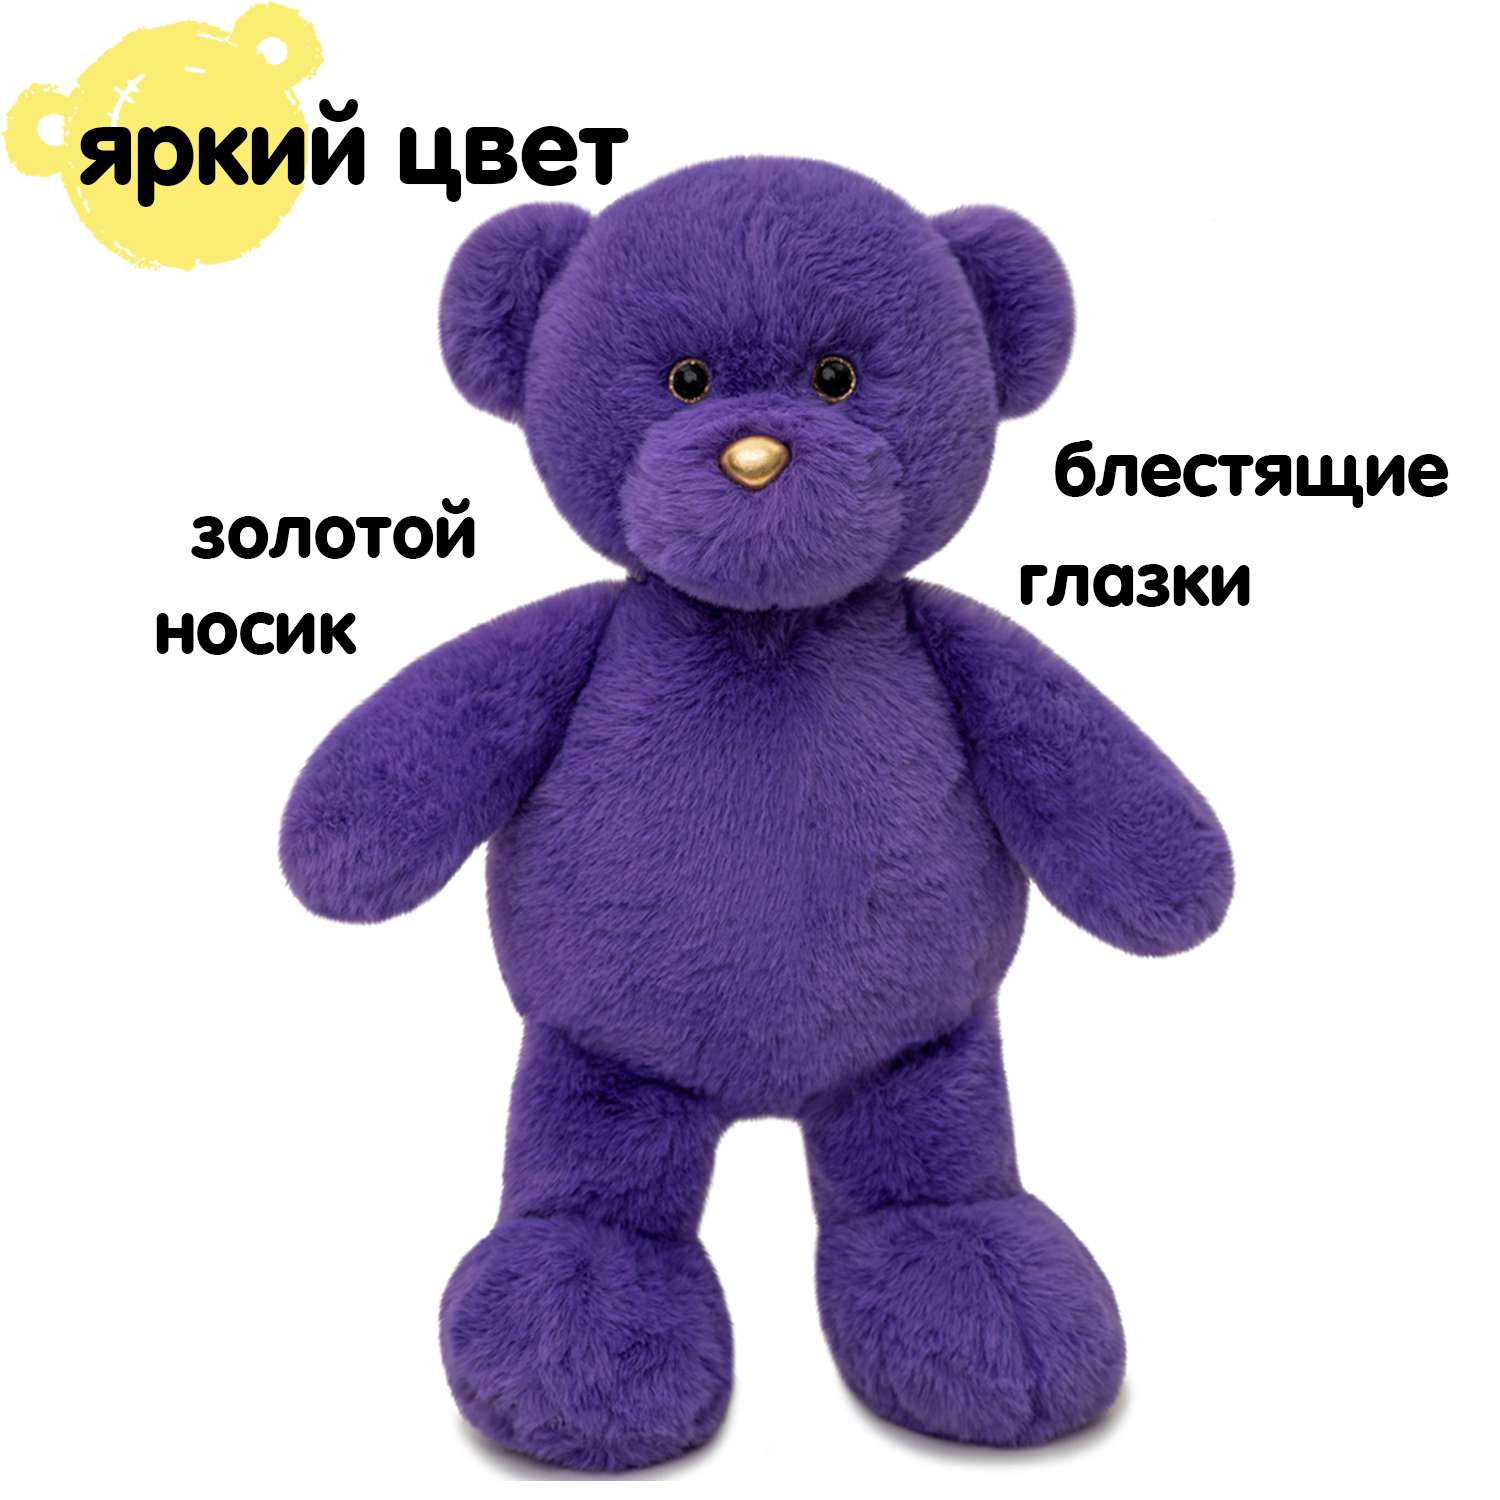 Мягкая игрушка KULT of toys Плюшевый медведь 35 см цвет фиолетовый - фото 8